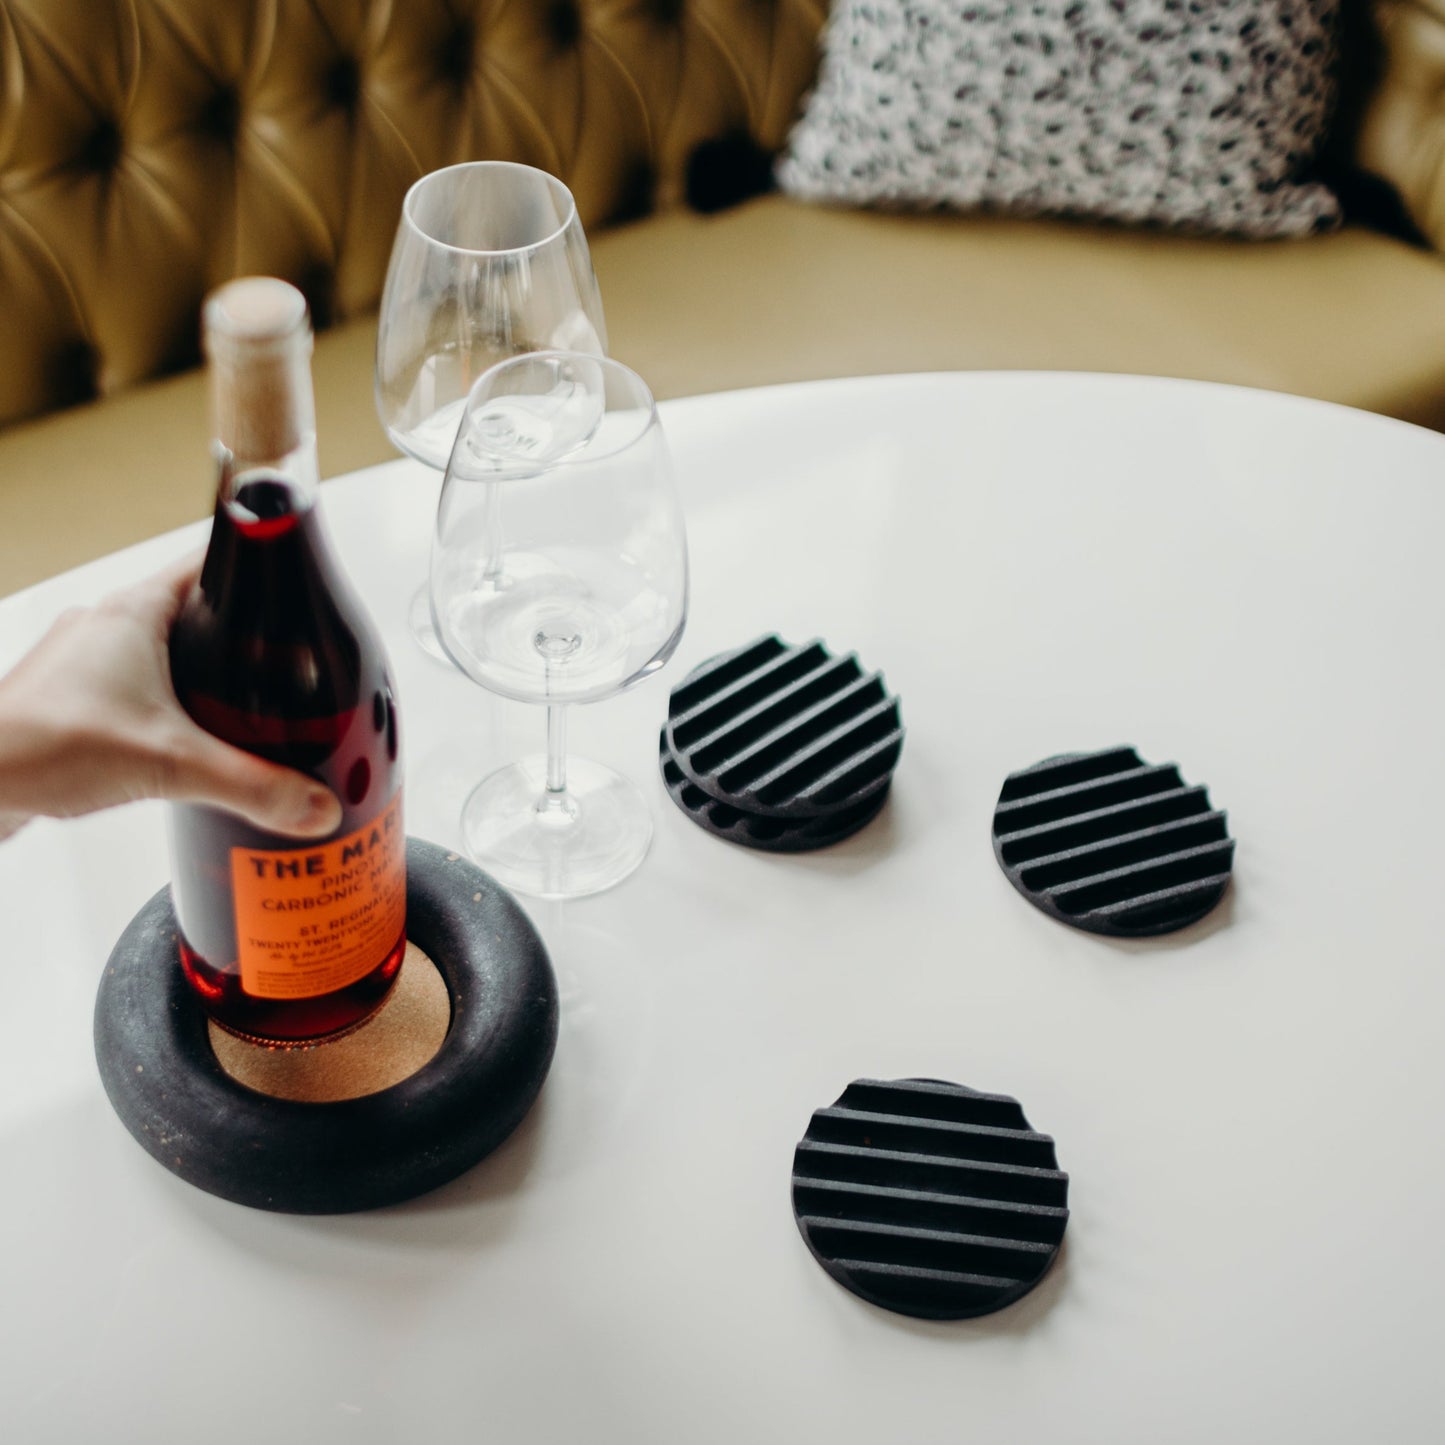 Concrete terrazzo coaster set in black with a black terrazzo wine coaster, wine bottle, and glasses.